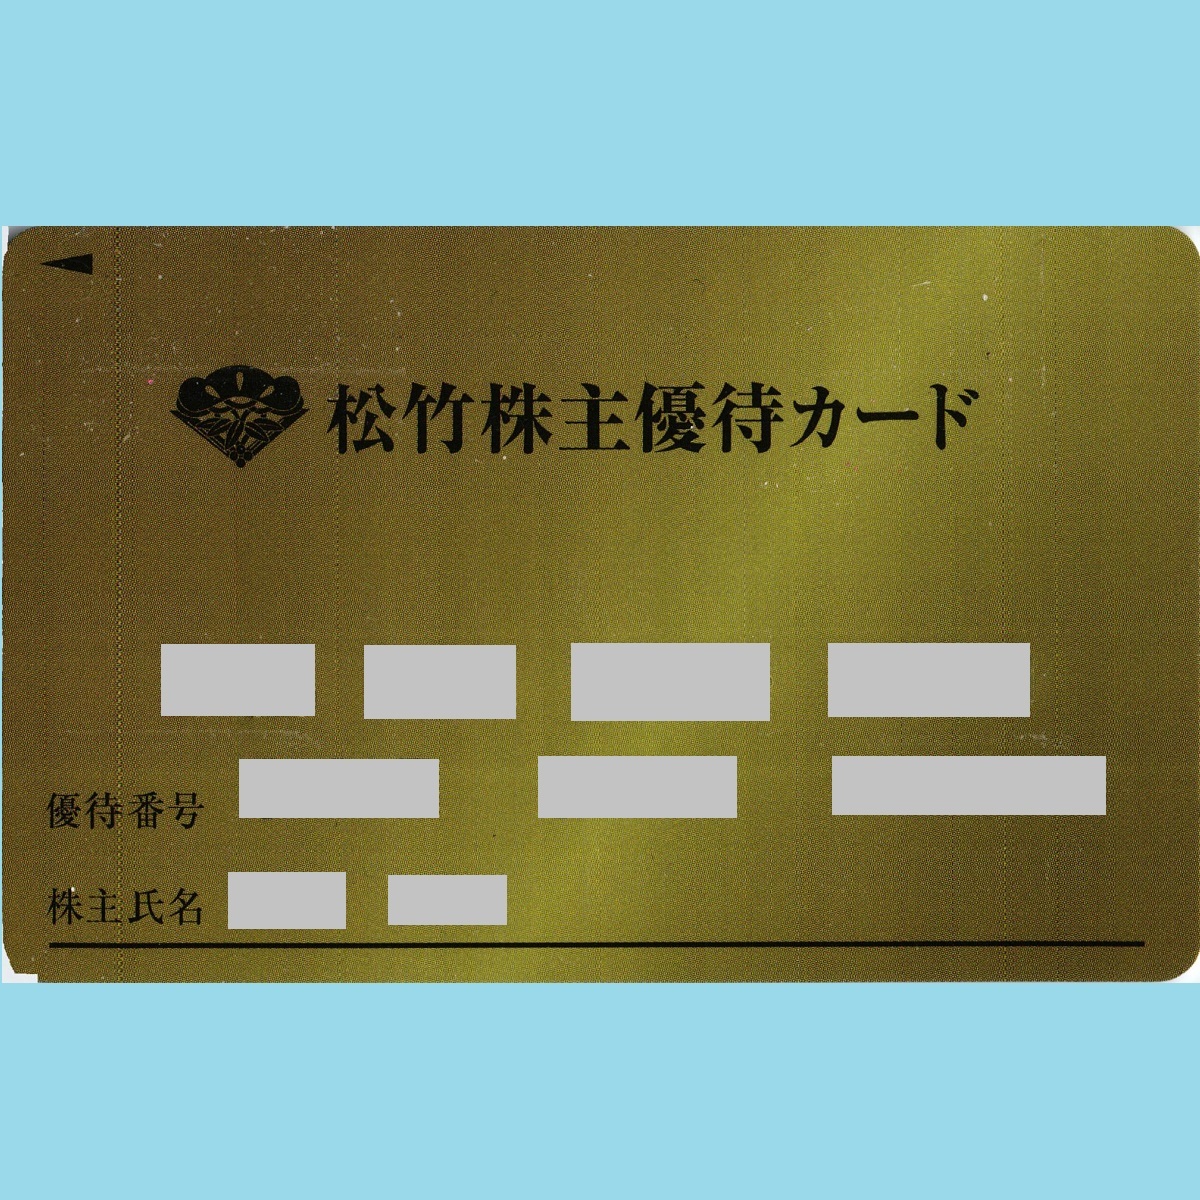 松竹株主優待カード100p要返却 - www.4half.com.br